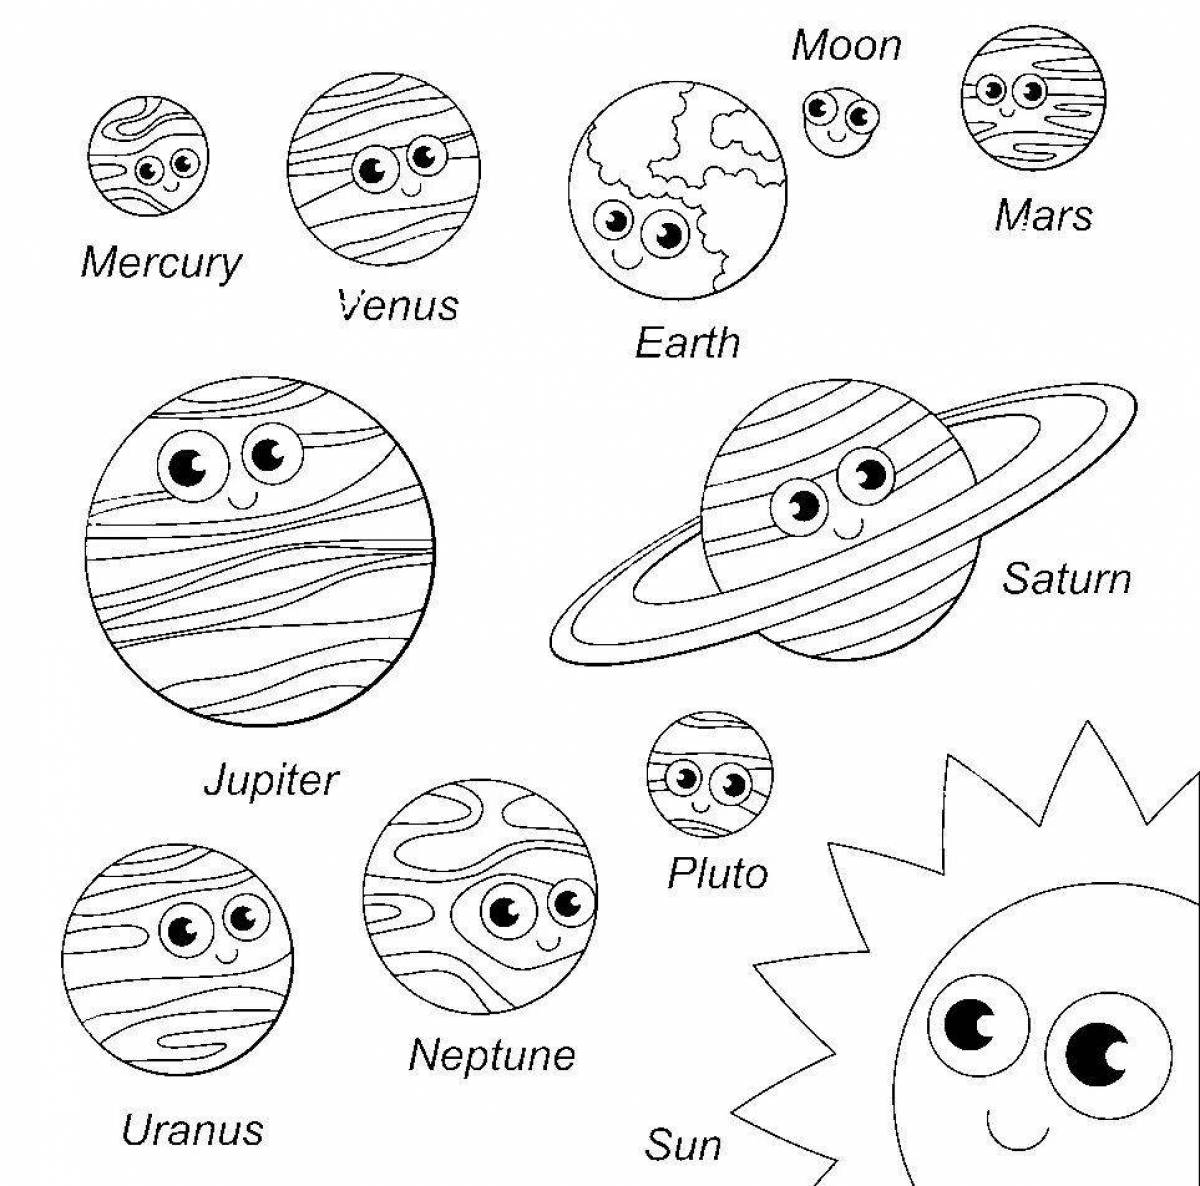 Красивая раскраска планет солнечной системы в порядке от солнца с именами